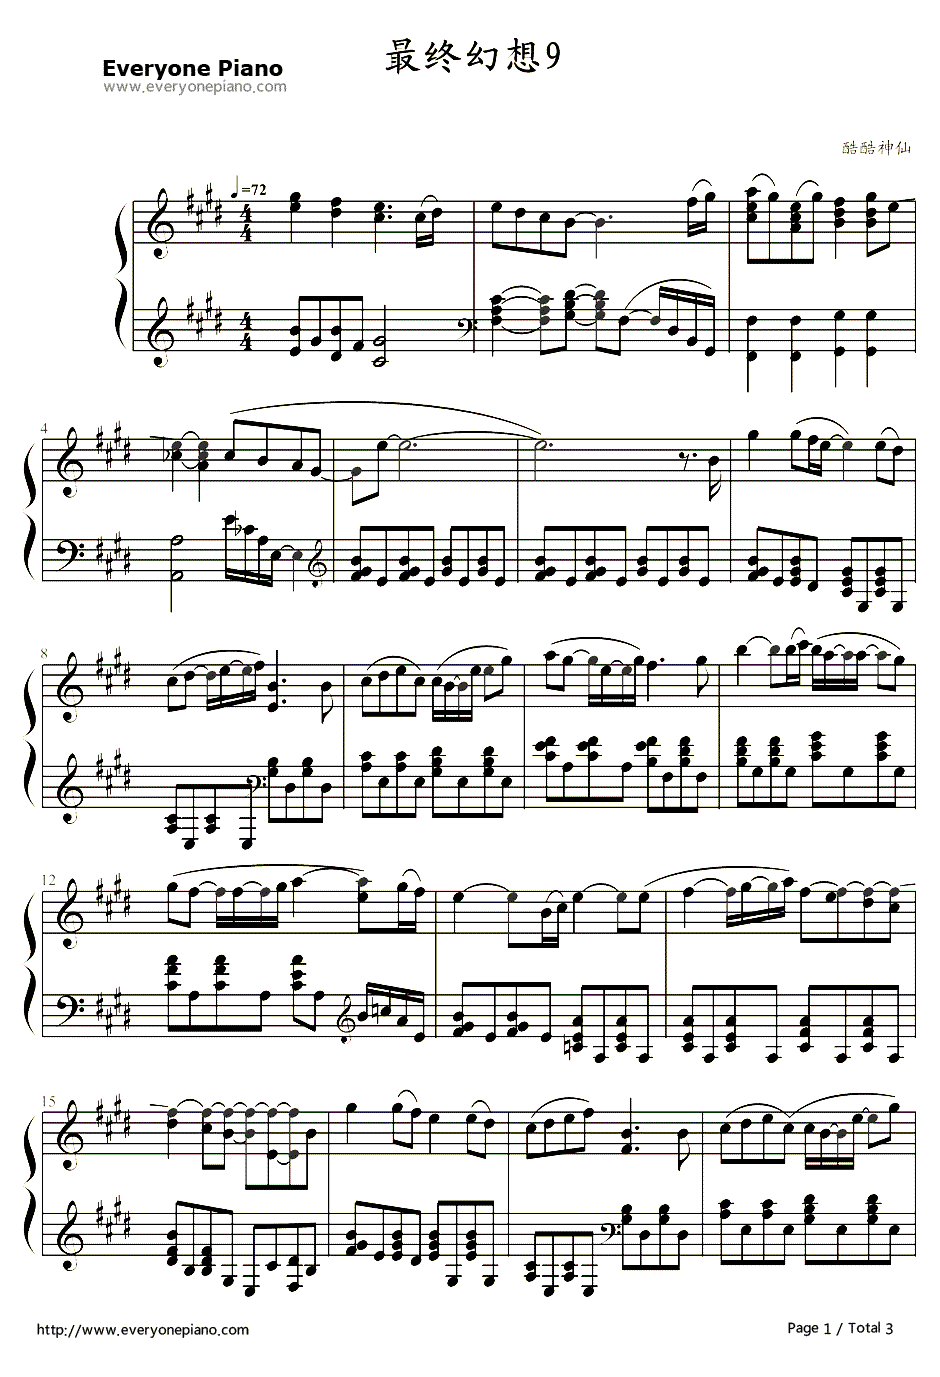 生命的旋律钢琴谱-植松伸夫-《最终幻想9》主题曲1